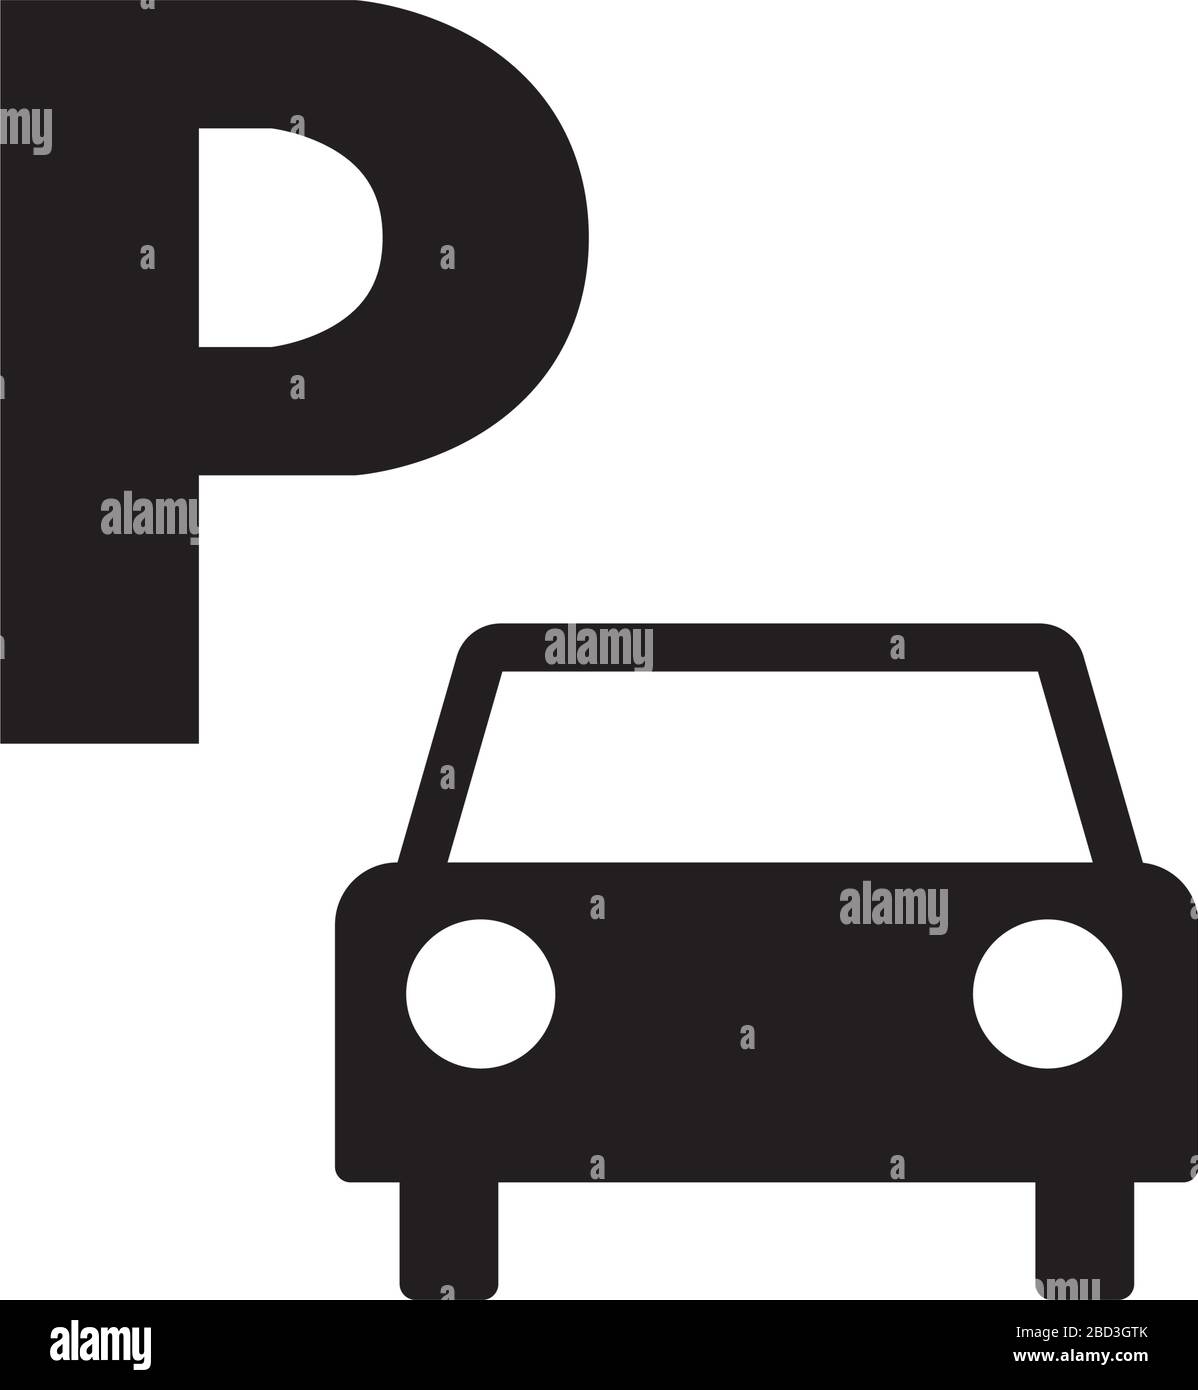 parking icon / public information symbol Stock Vector